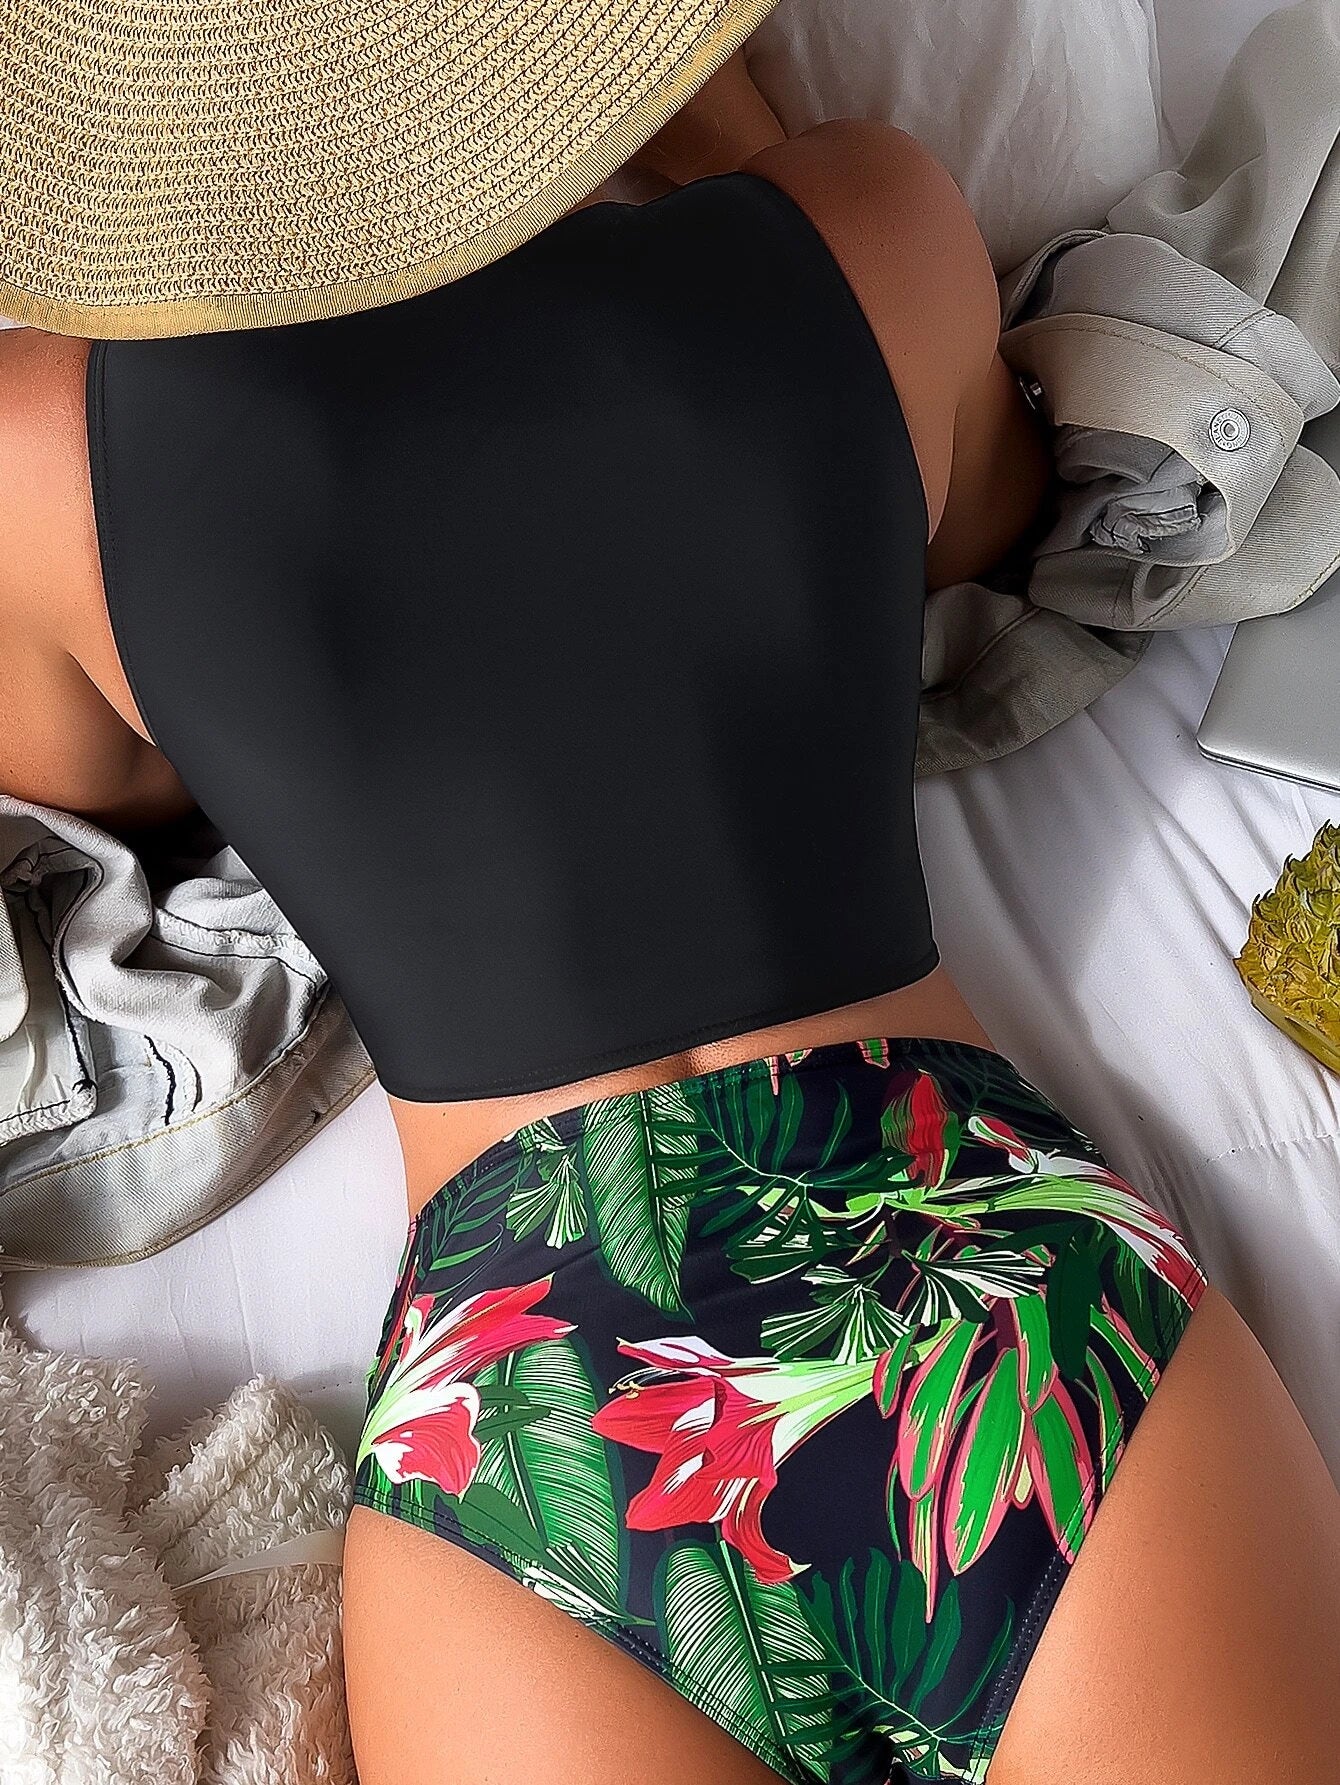 Tropical Twist High Waisted Bikini Set